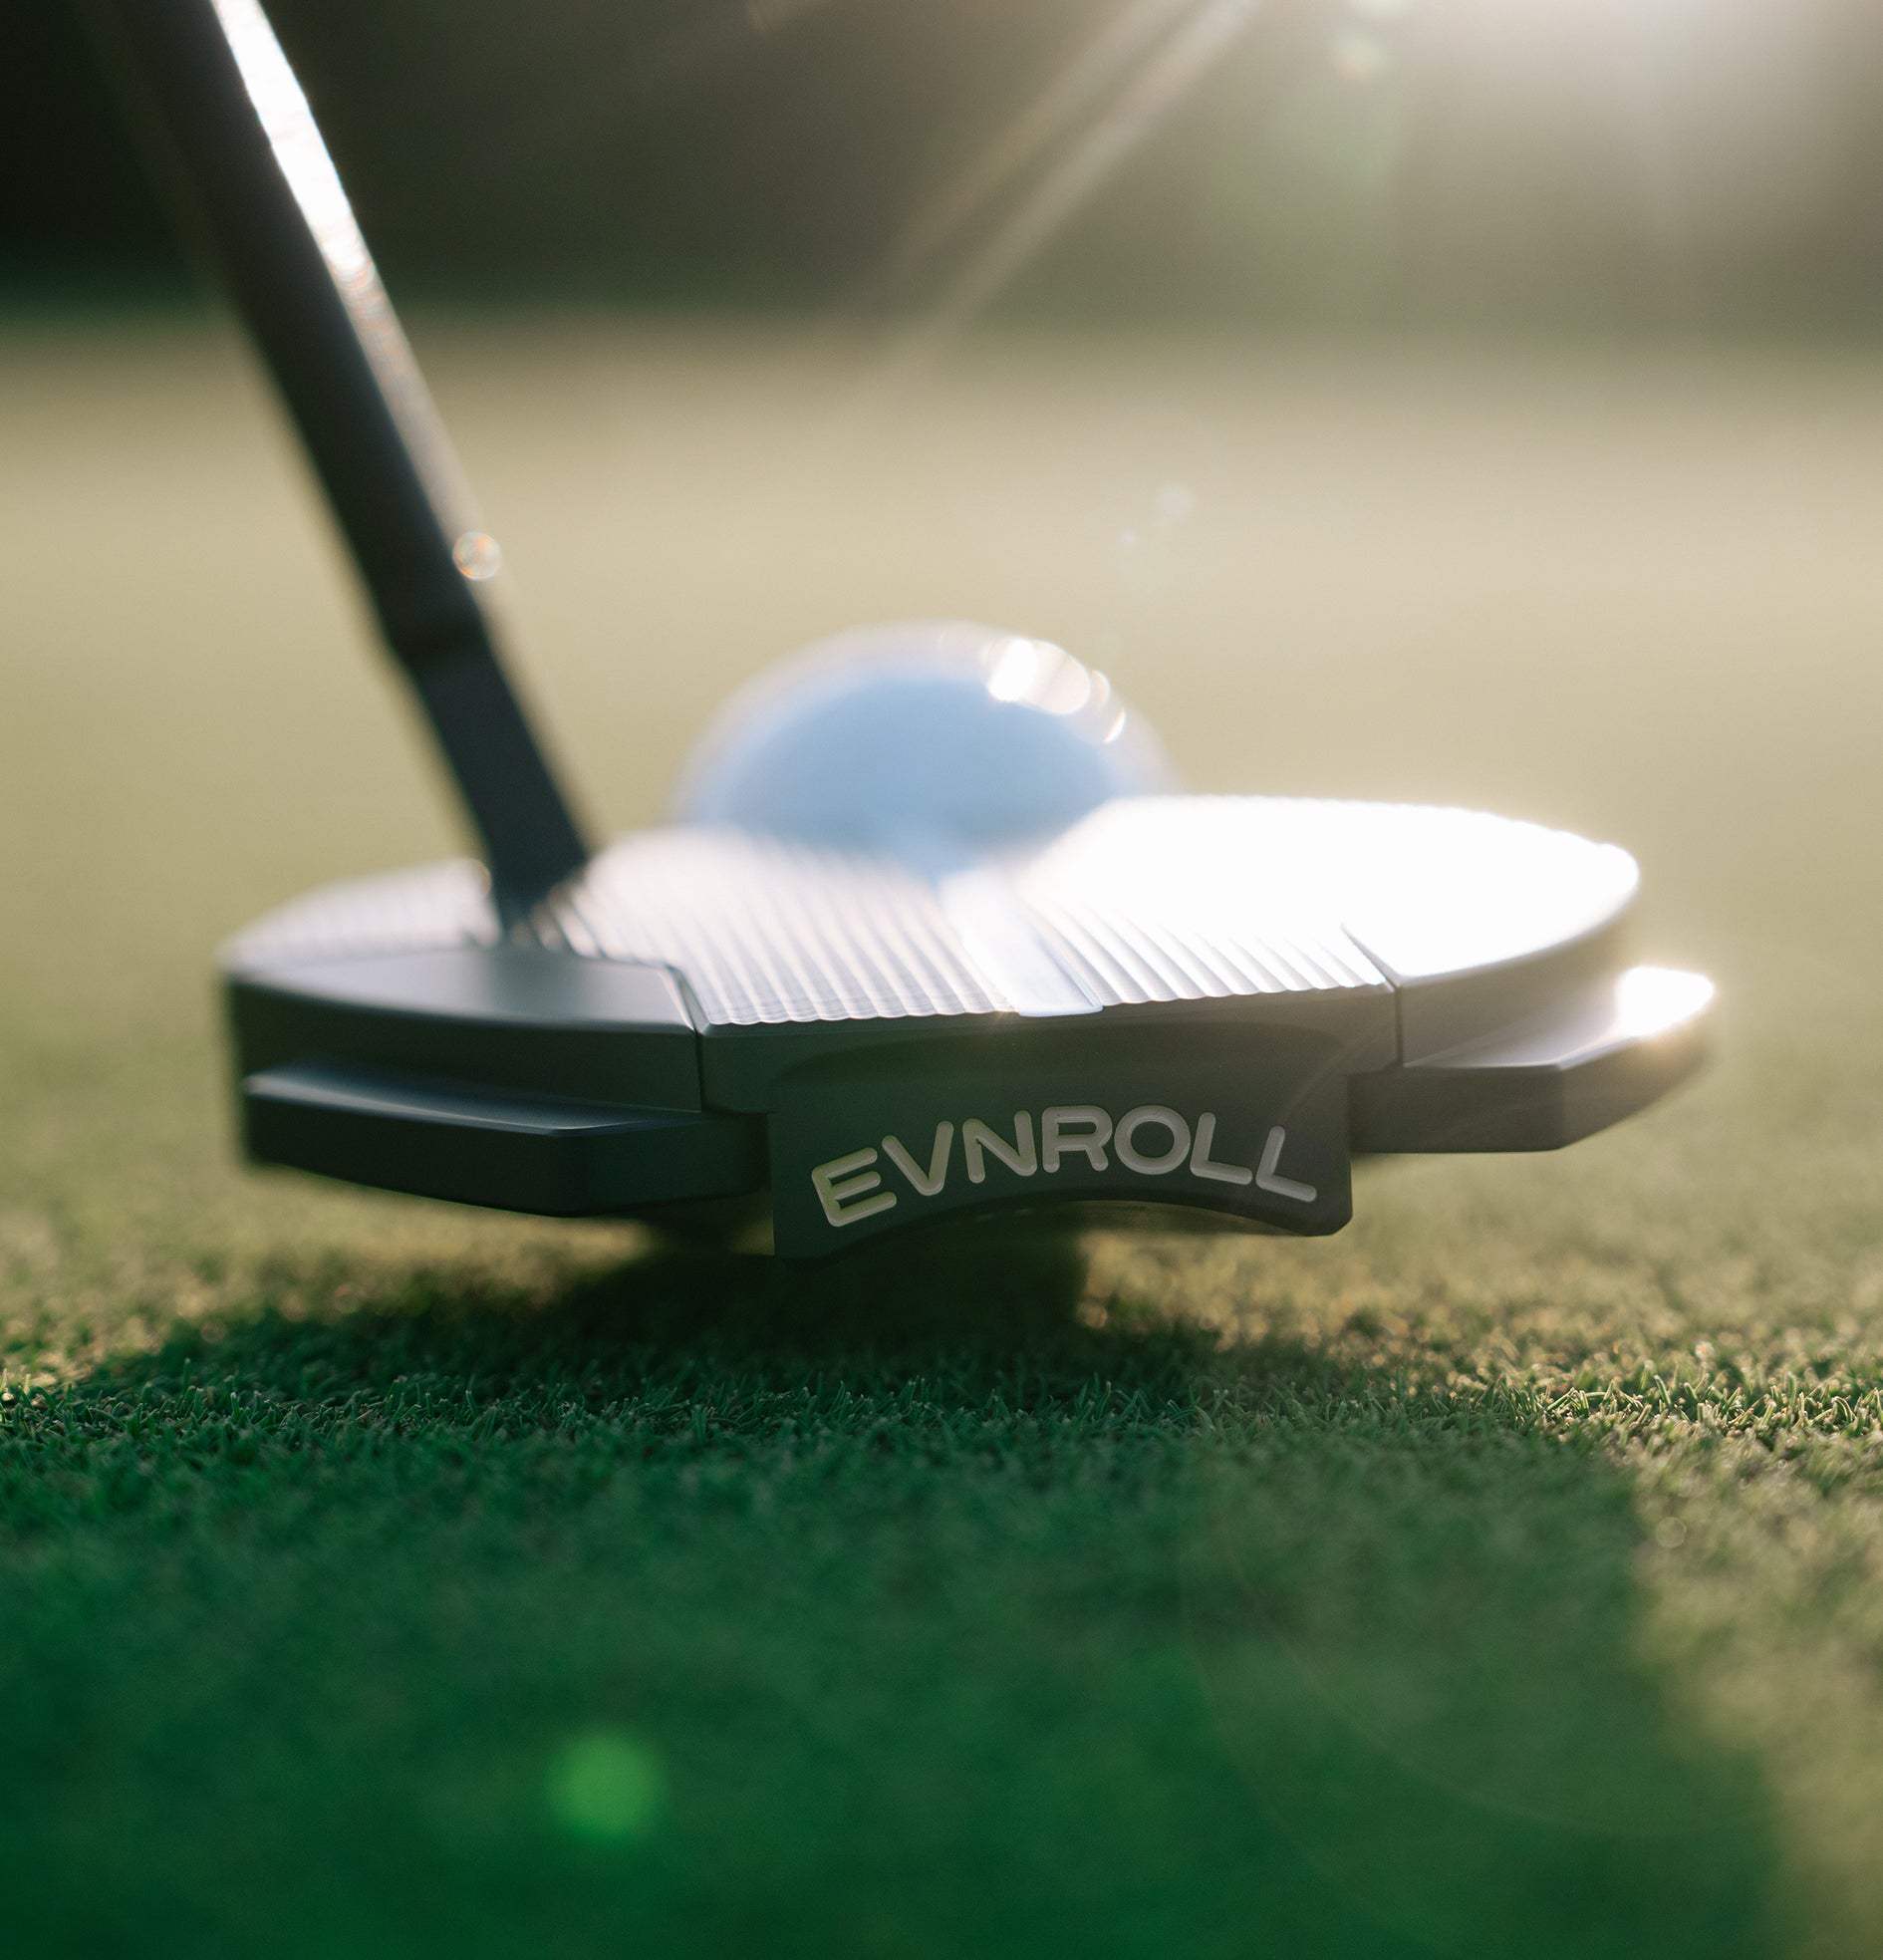 evnroll putter with golf ball